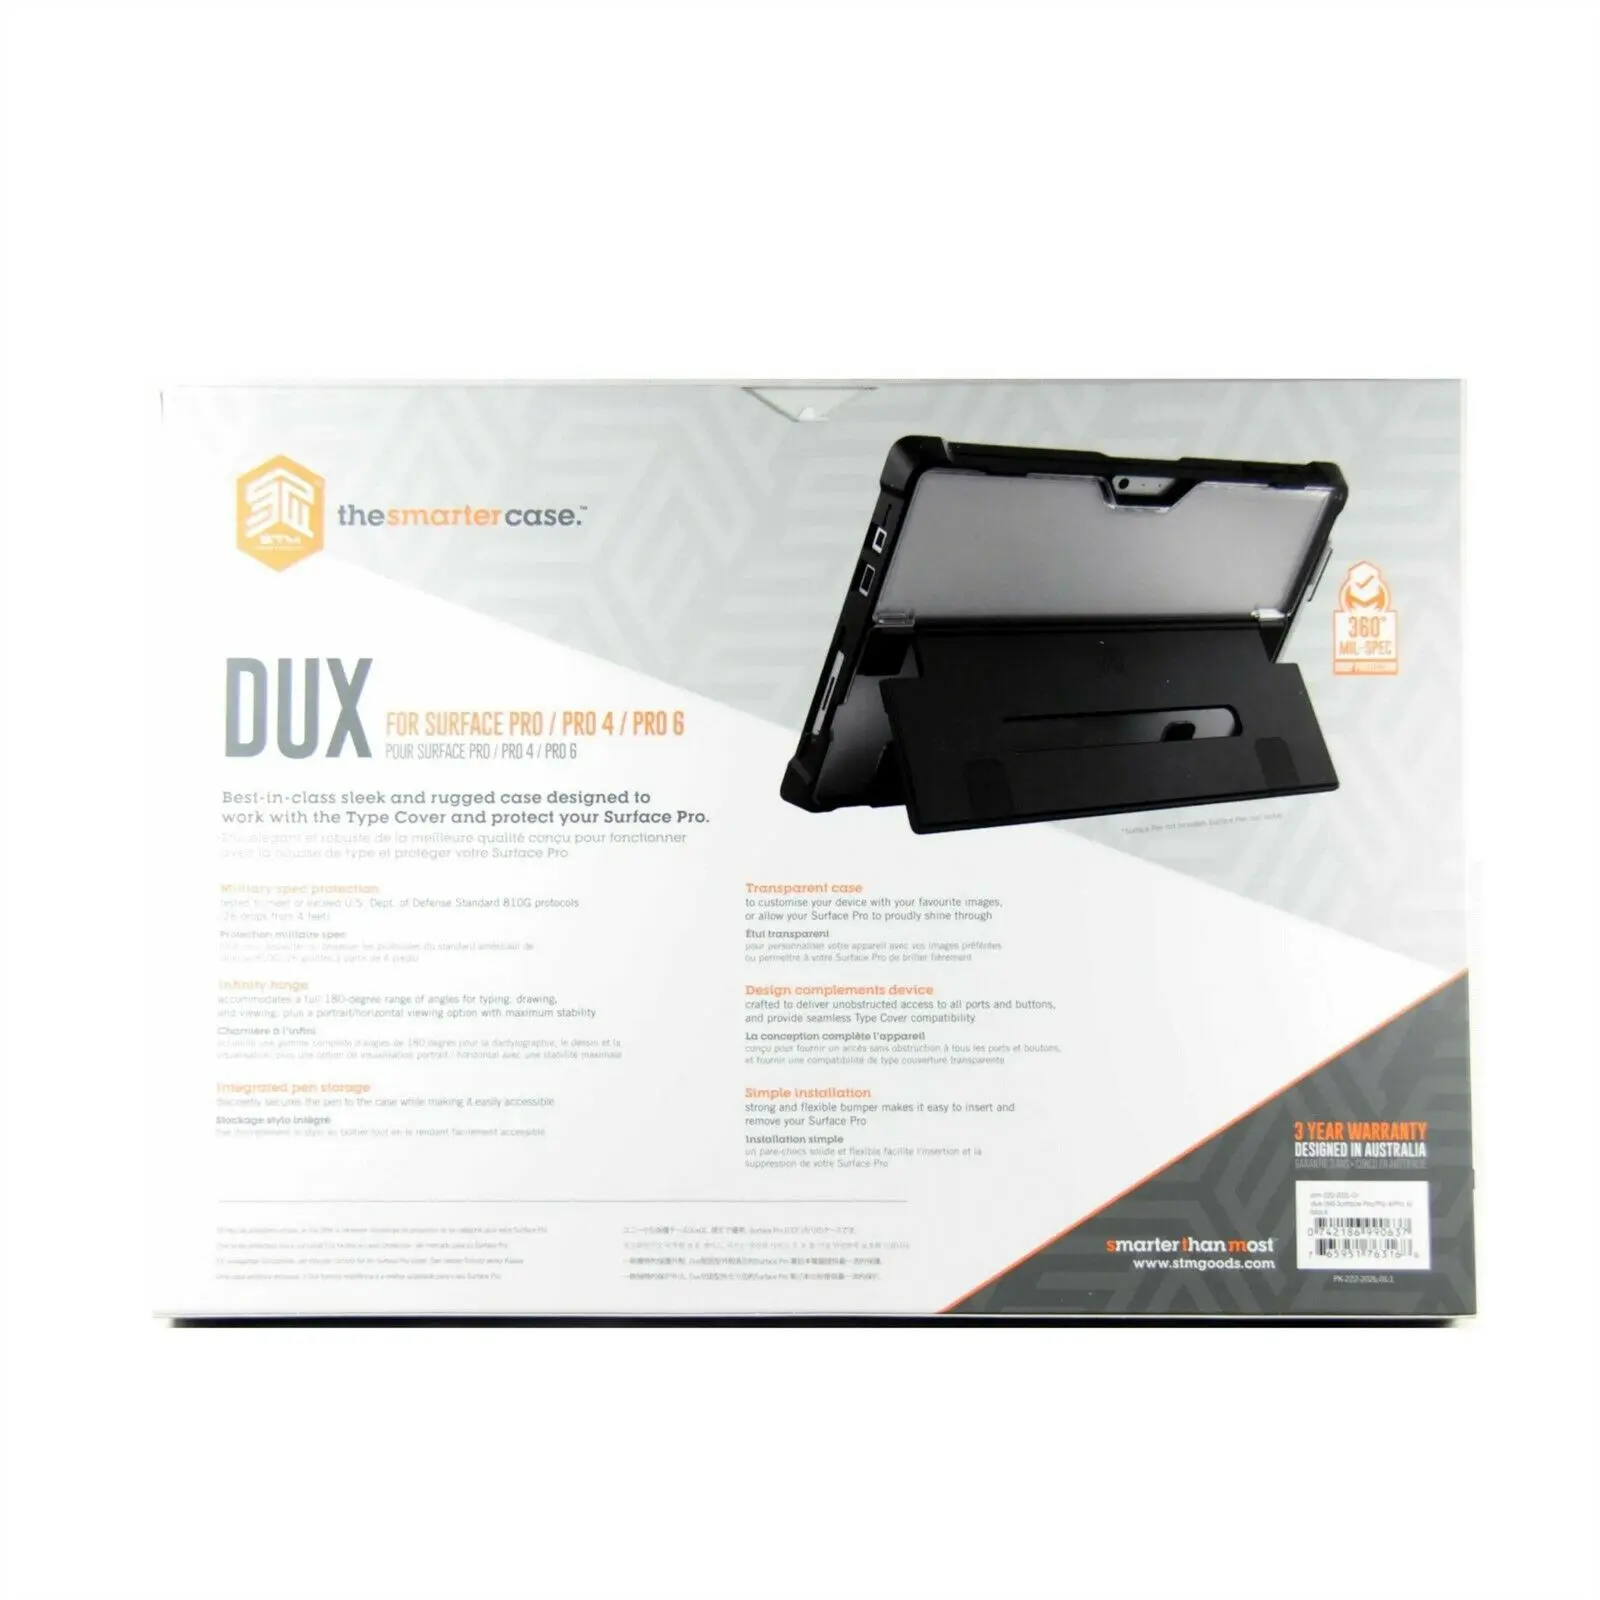 เคส STM รุ่น Dux - Microsoft Surface Pro/ Pro 4/ Pro 6 - สีดำ